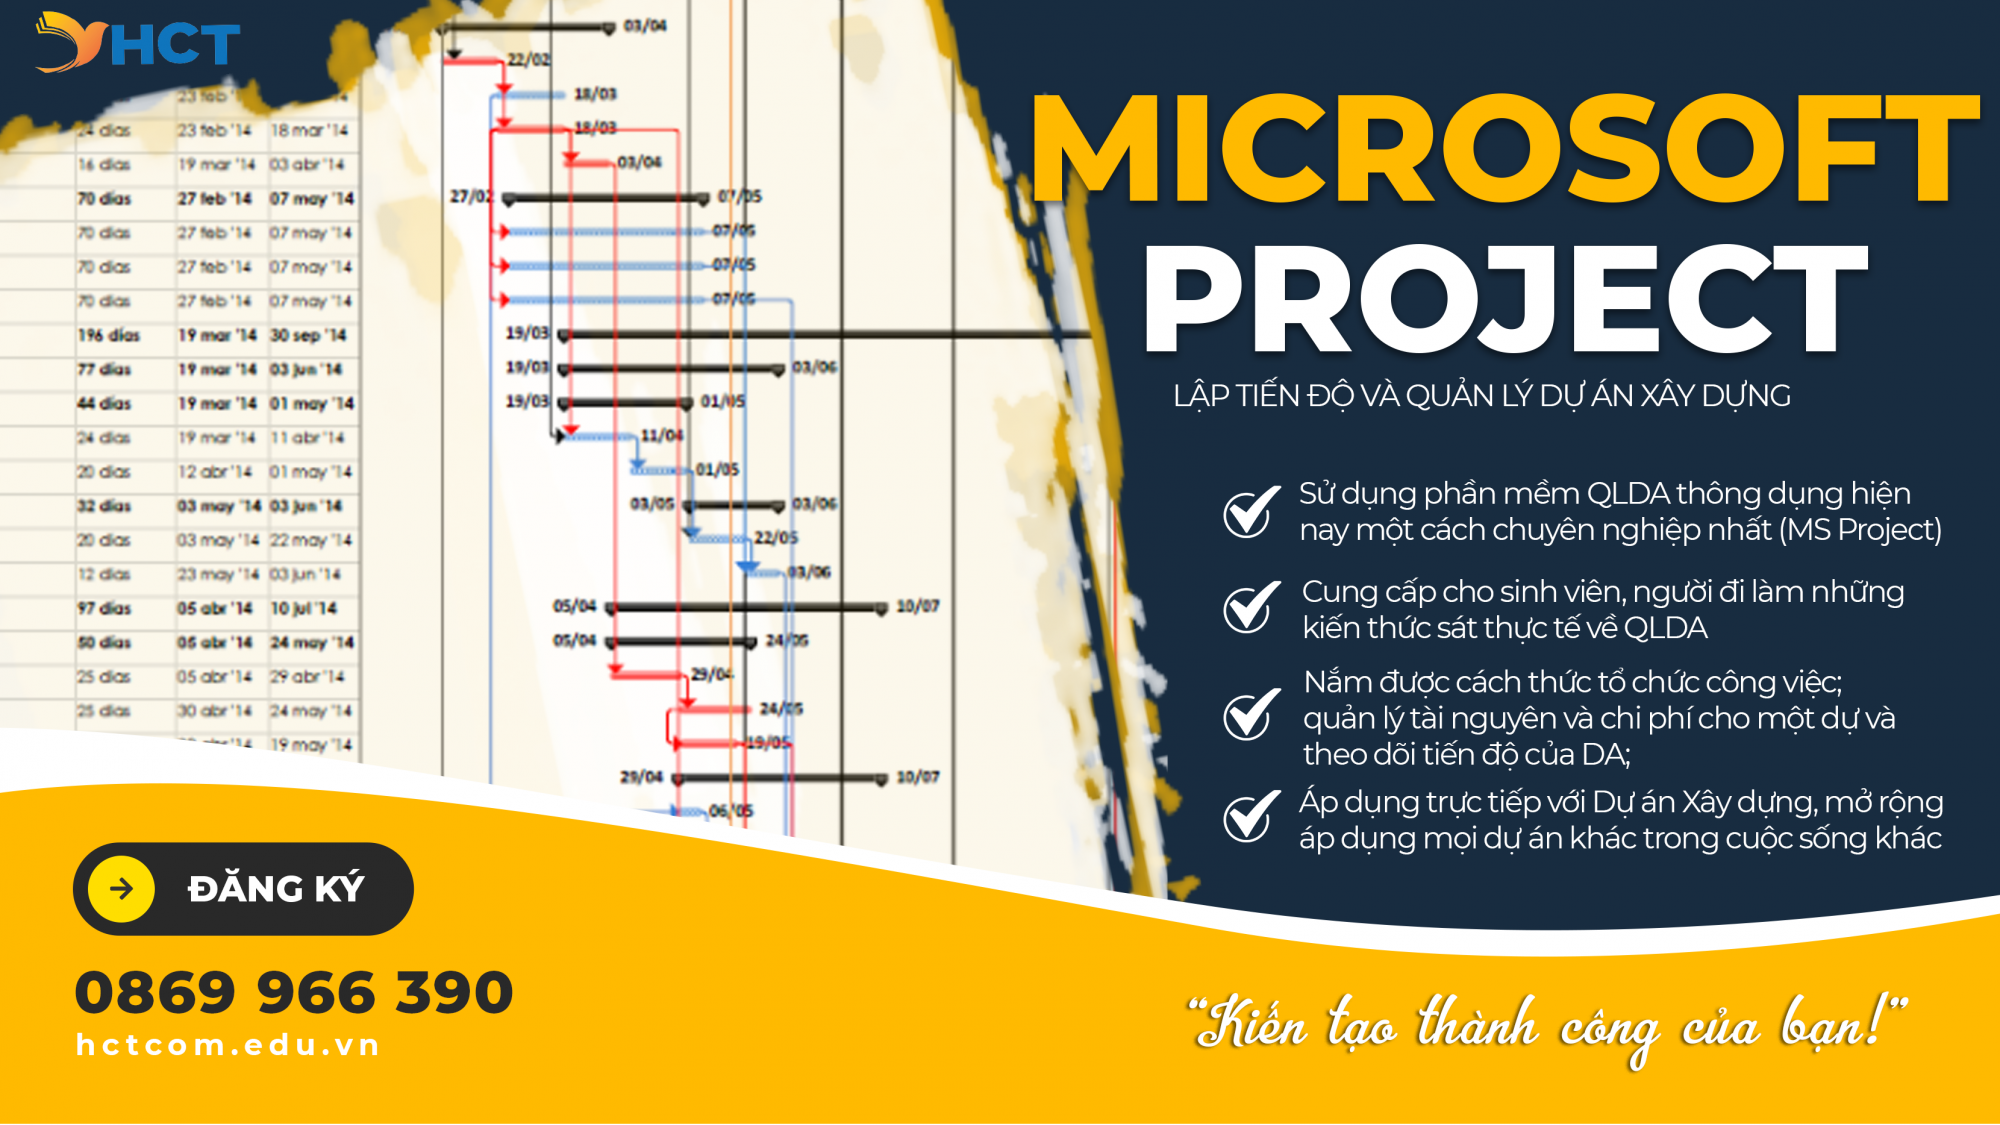 MSP - Lập tiến độ và quản lý dự án xây dựng bằng Microsoft Project